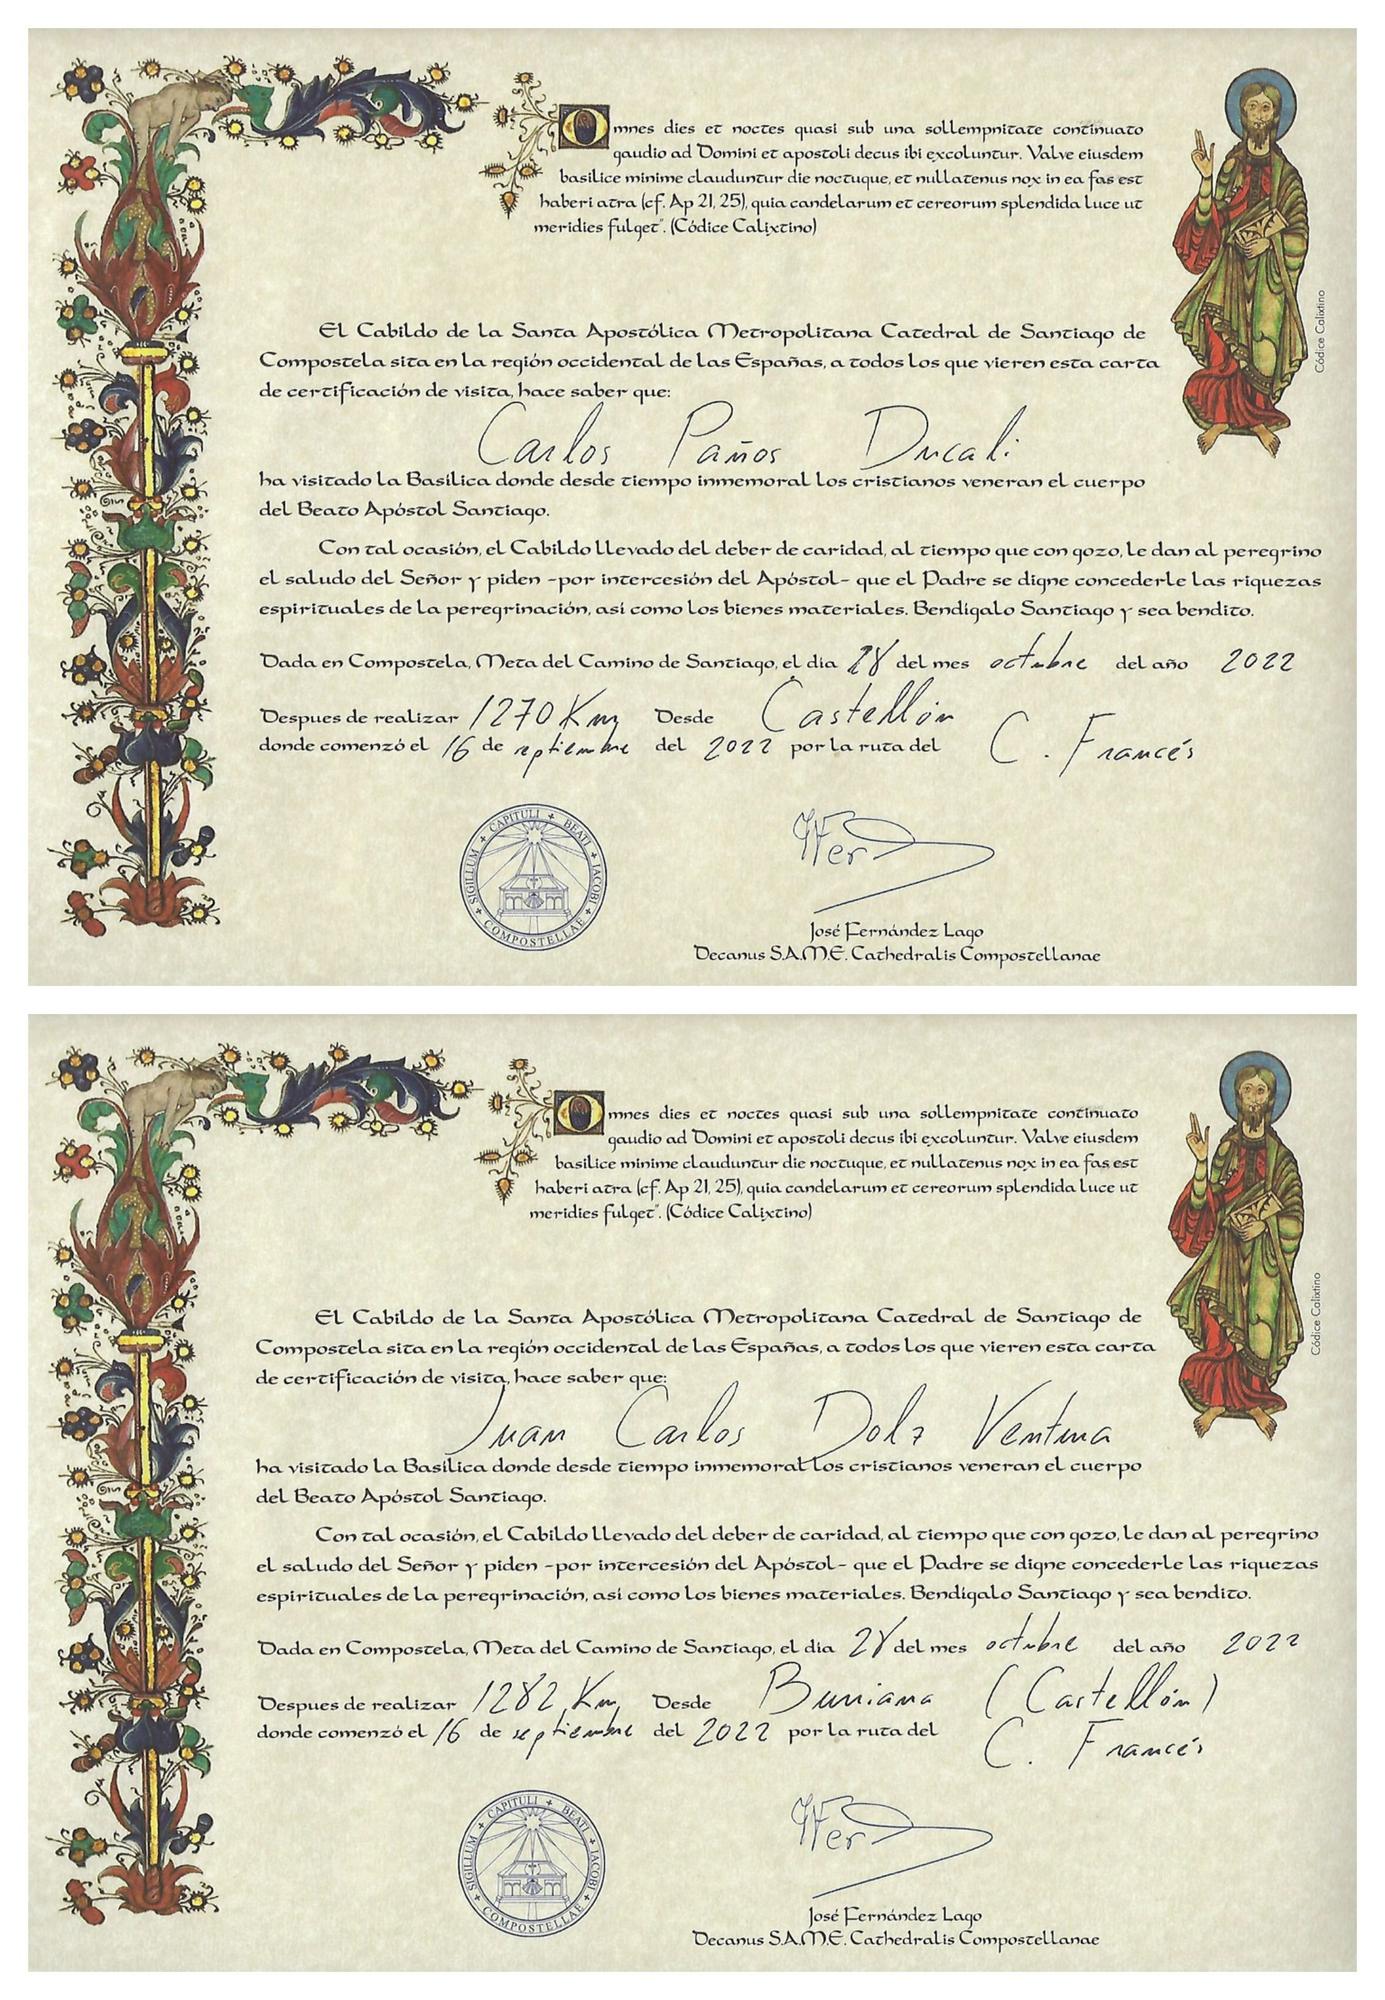 Los dos certificados que confirman que Carlos Paños y Juan Carlos Dolz completaron el Camino desde Castelló y Burriana respectivamente.